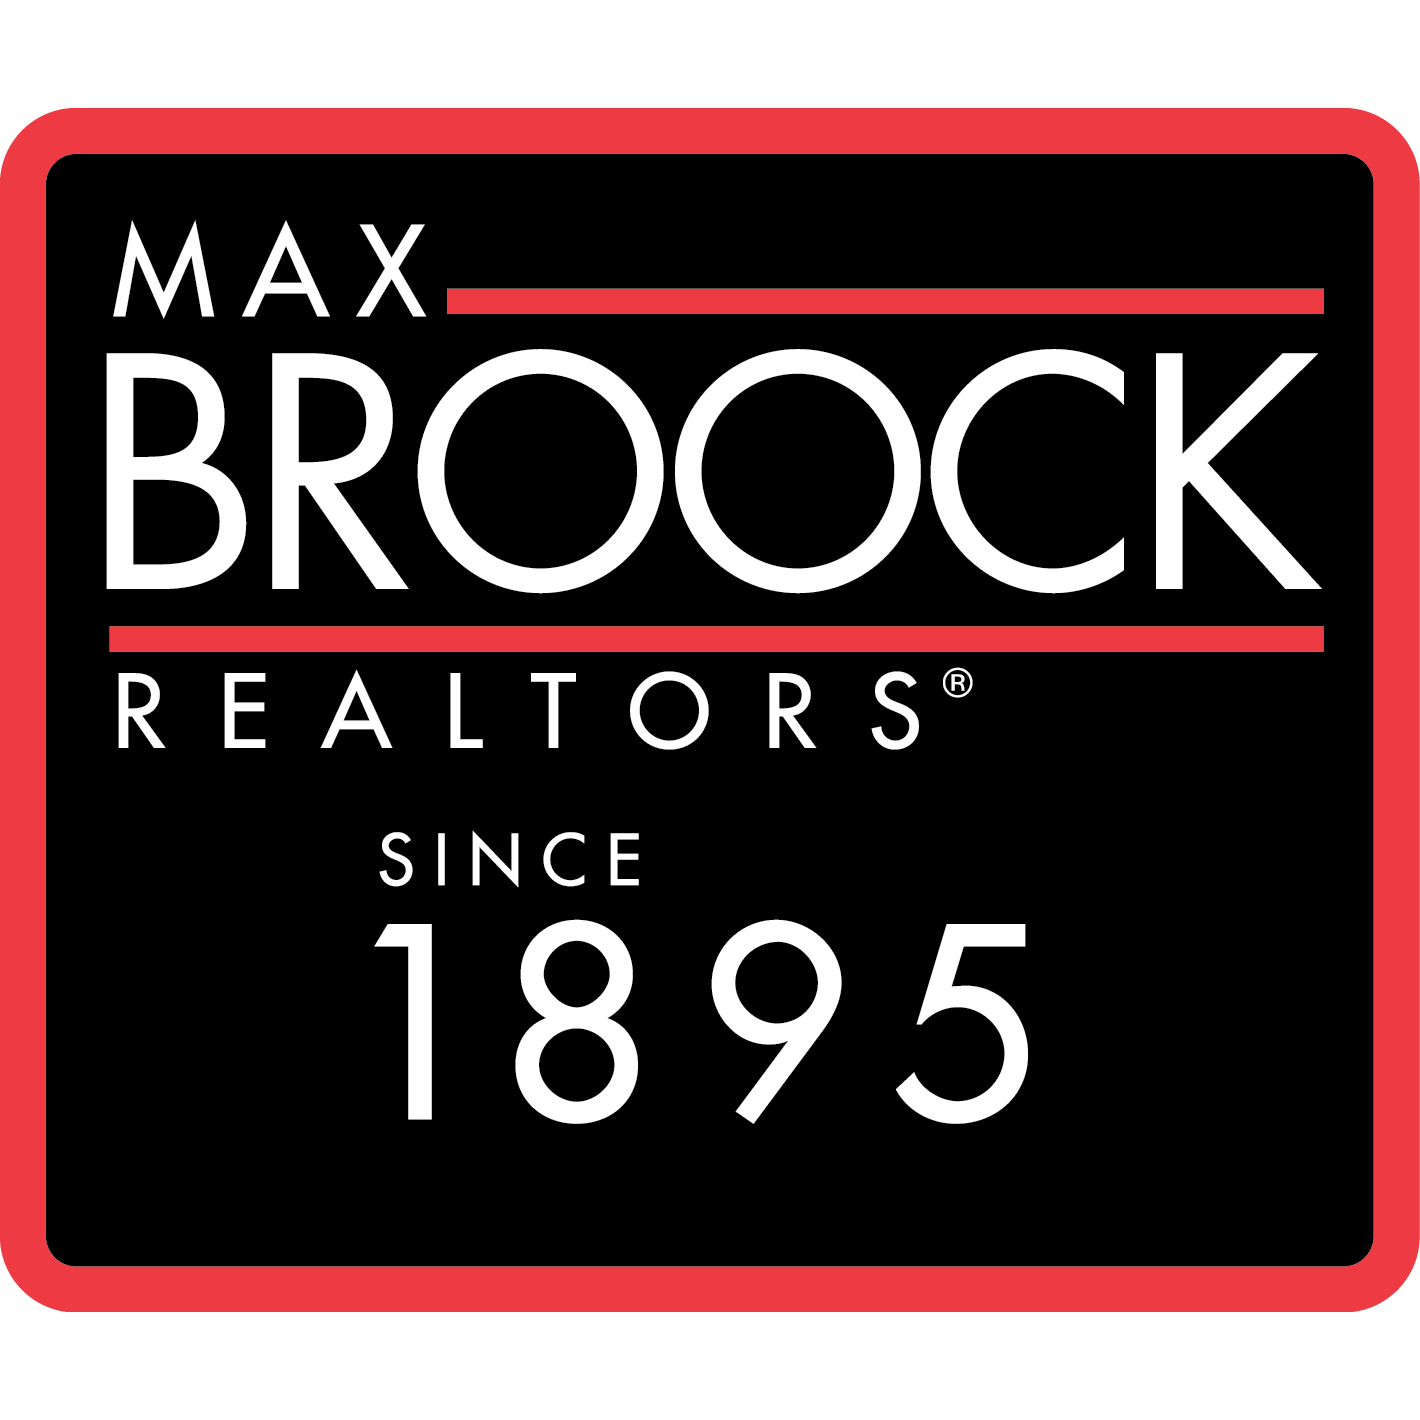 Max Broock REALTORS - Detroit, MI 48226 - (313)324-8600 | ShowMeLocal.com